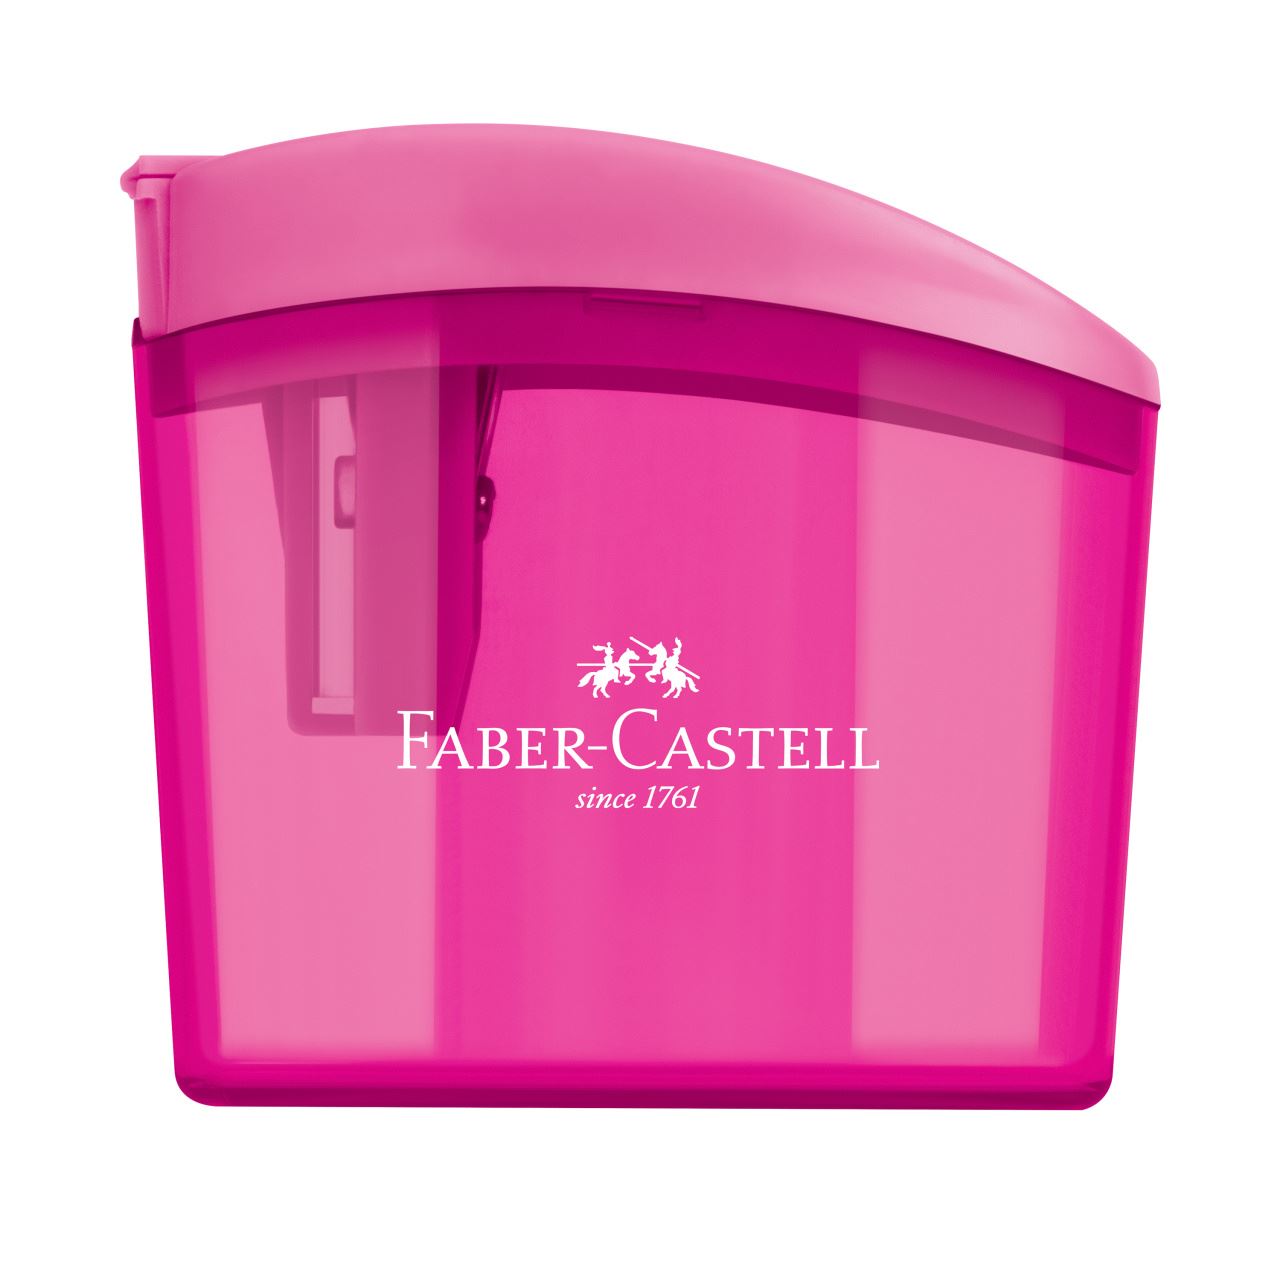 Faber-Castell - Apontador c/ Deposito Clickbox